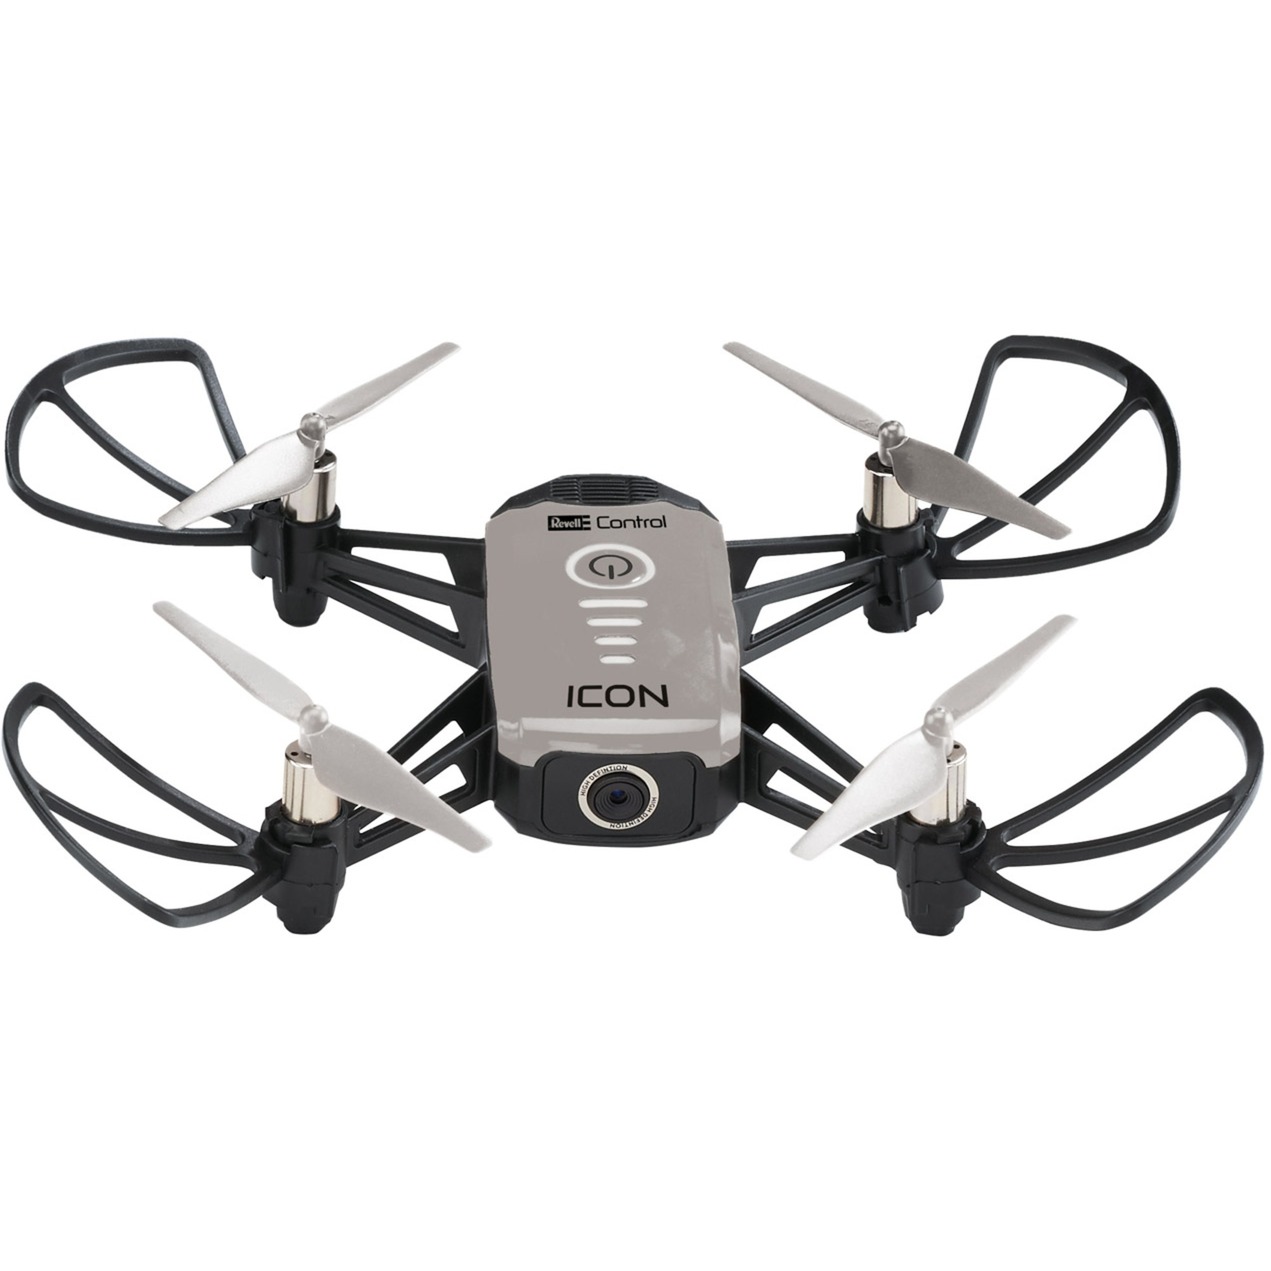 Camera Quadrocopter ICON, Drohne